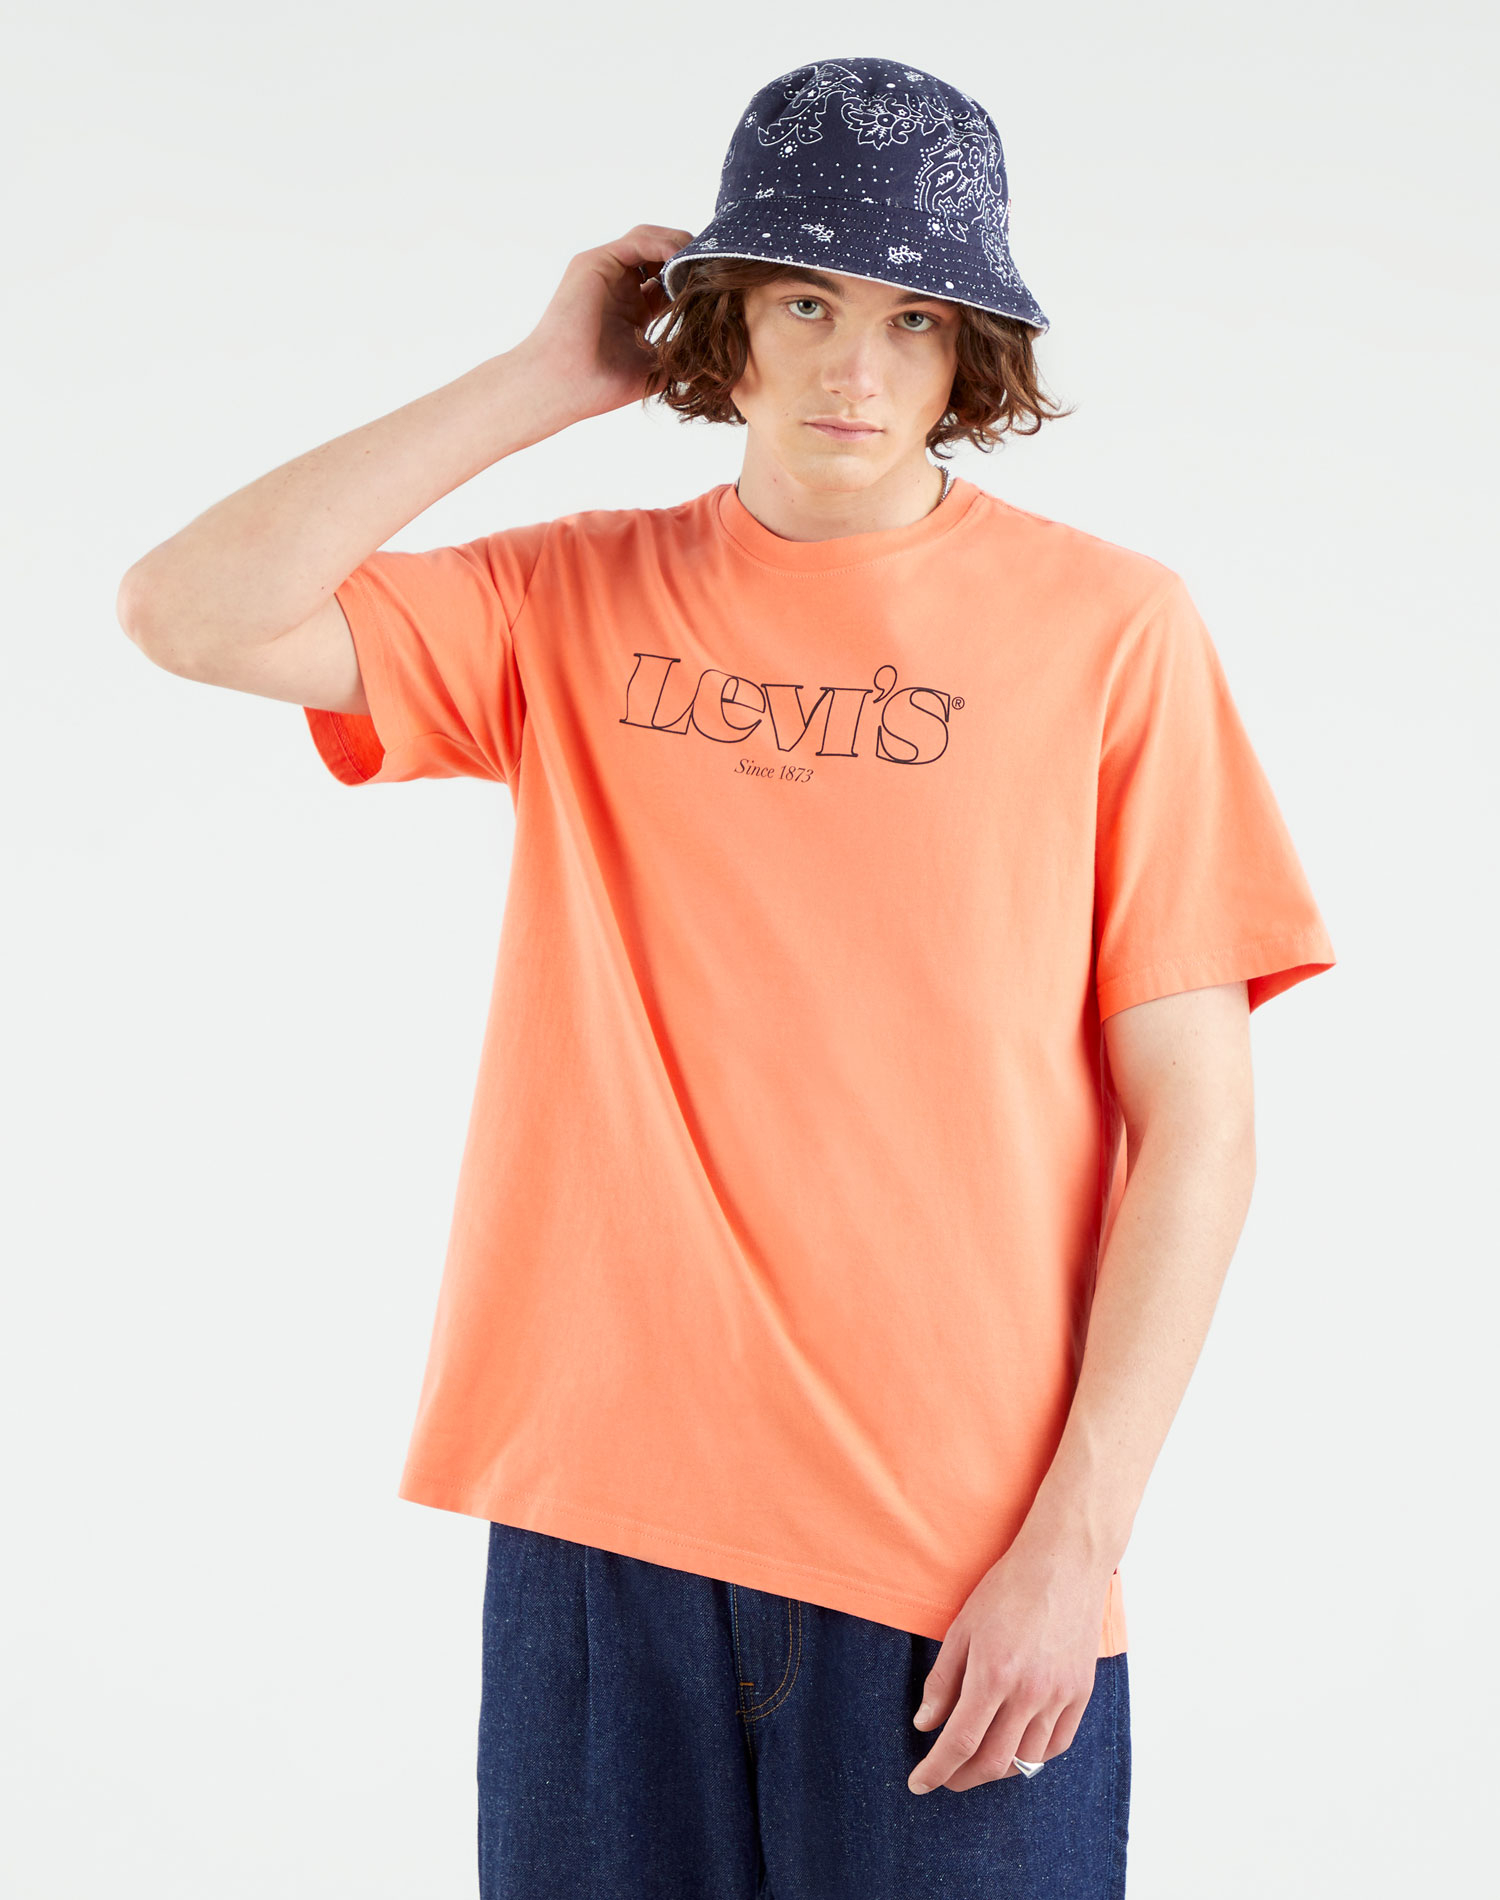 Levi's samarreta d'home de m/c 16143-0183 ataronjada